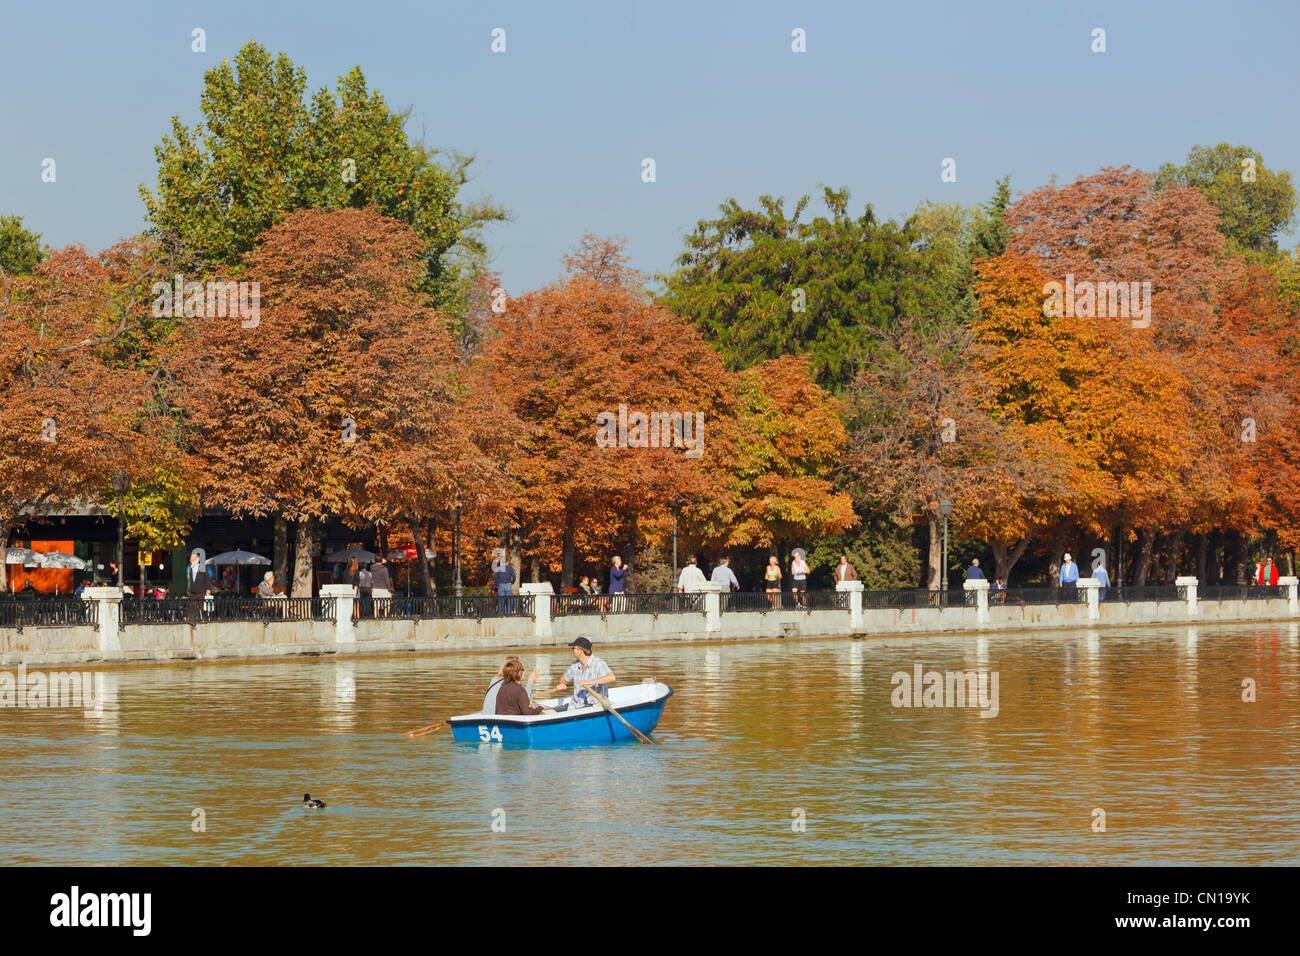 Madrid, Espagne. De l'aviron sur l'Estanque, ou d'un lac, dans les jardins d'El Retiro. Monument au roi Alphonse XII en arrière-plan. Banque D'Images